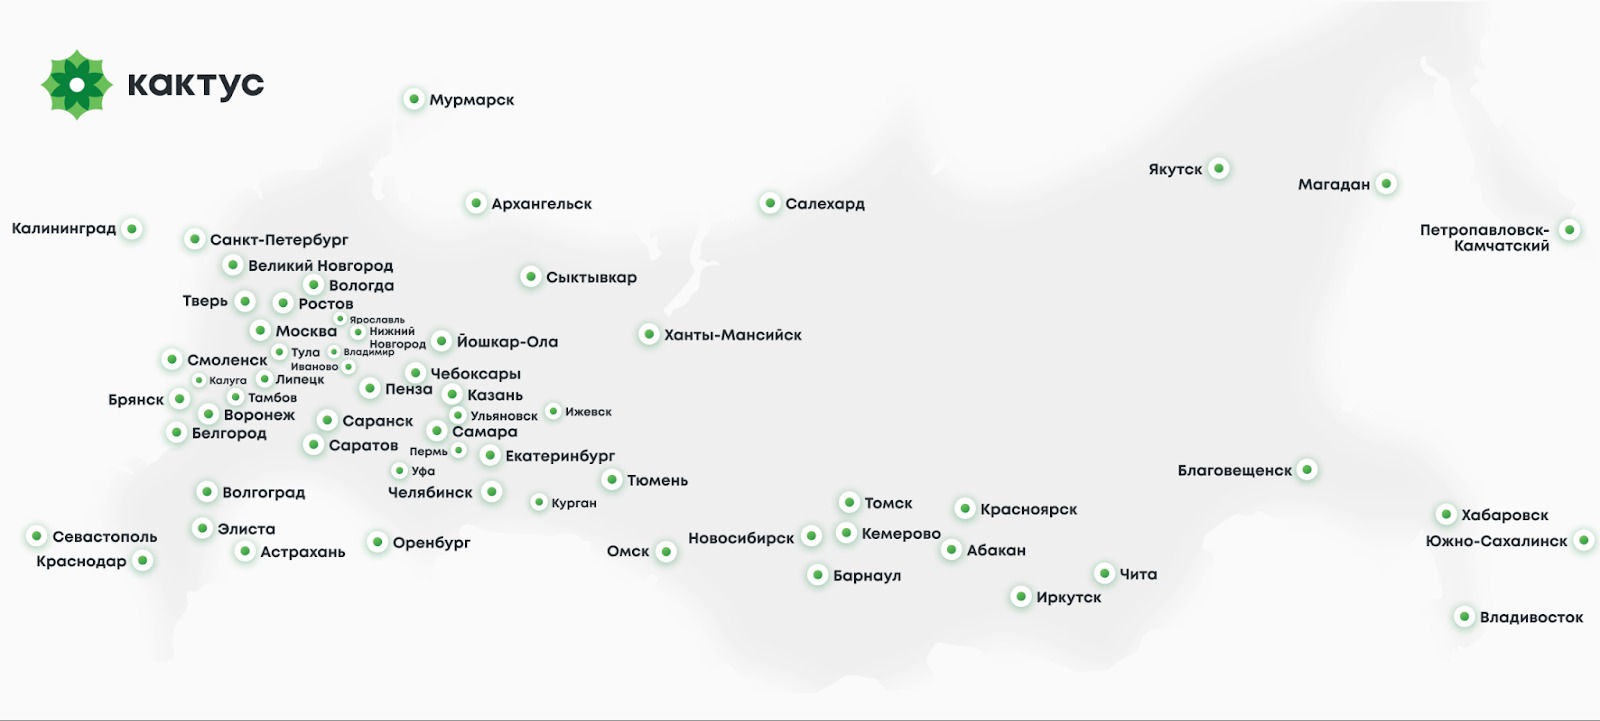 Карта клиентов Кактуса по округам: здесь и Сибирь, и Урал и даже Дальний Восток